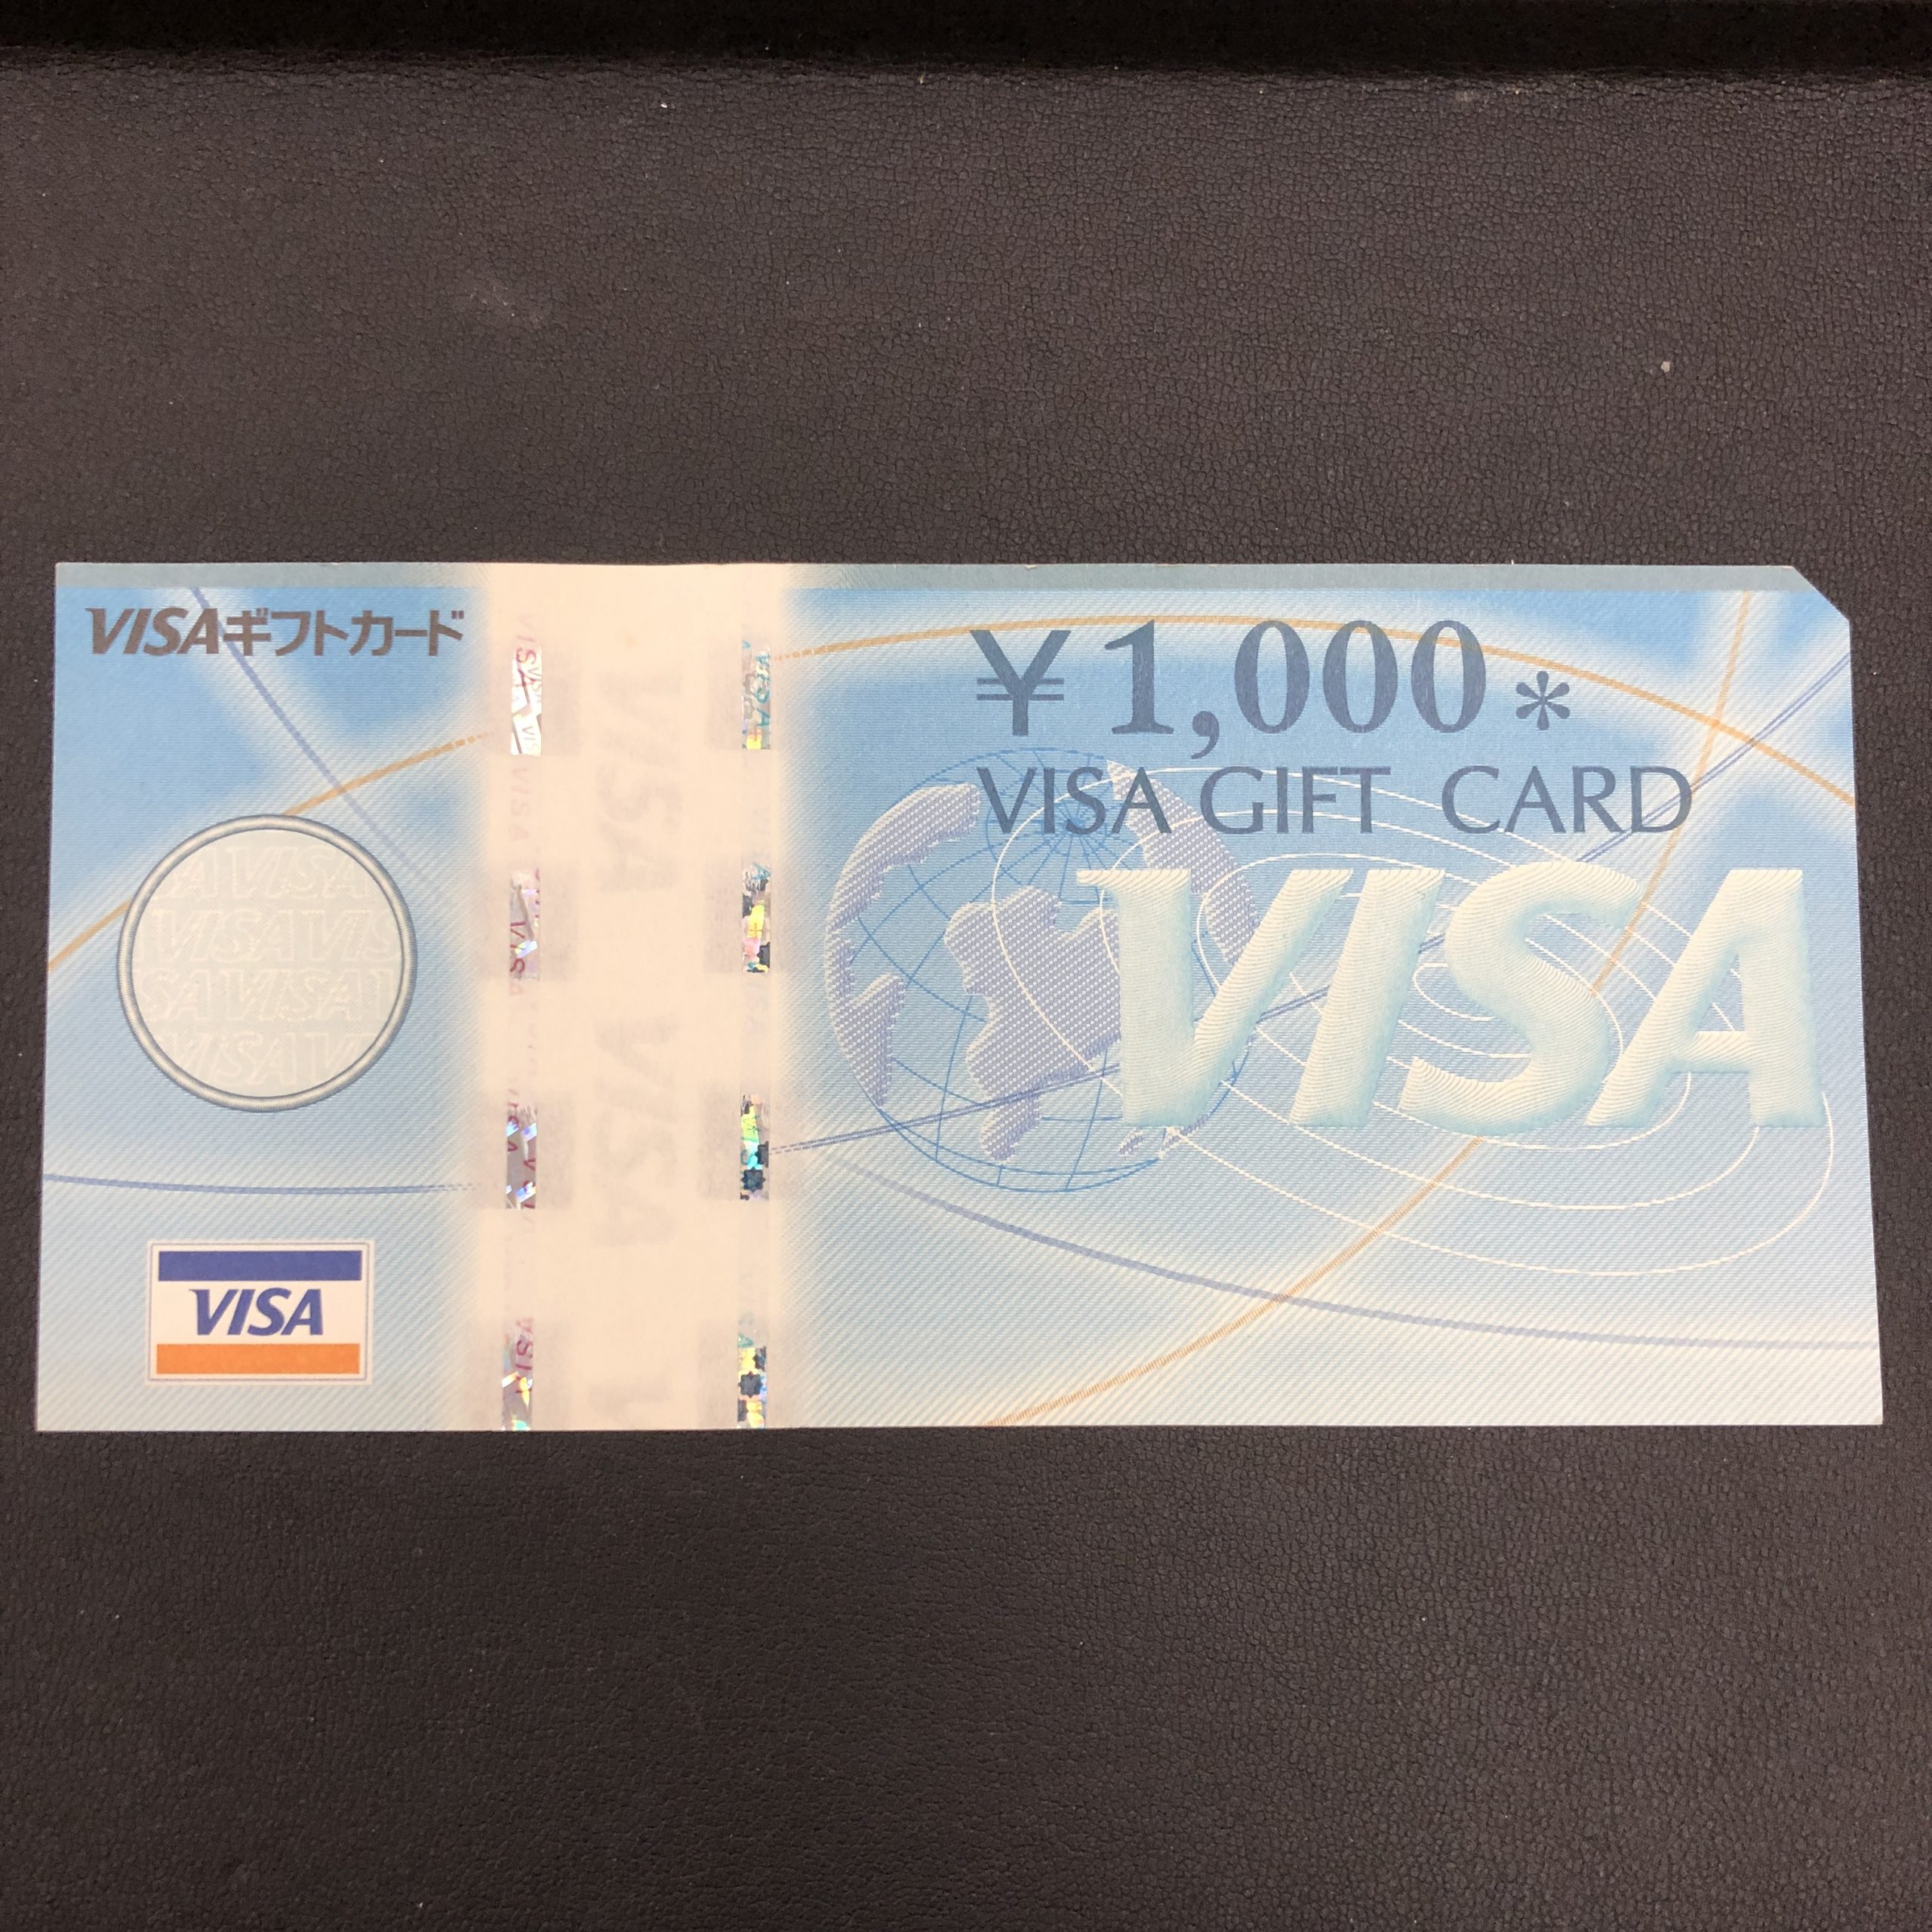 【金券】VISA ギフトカード 旧券